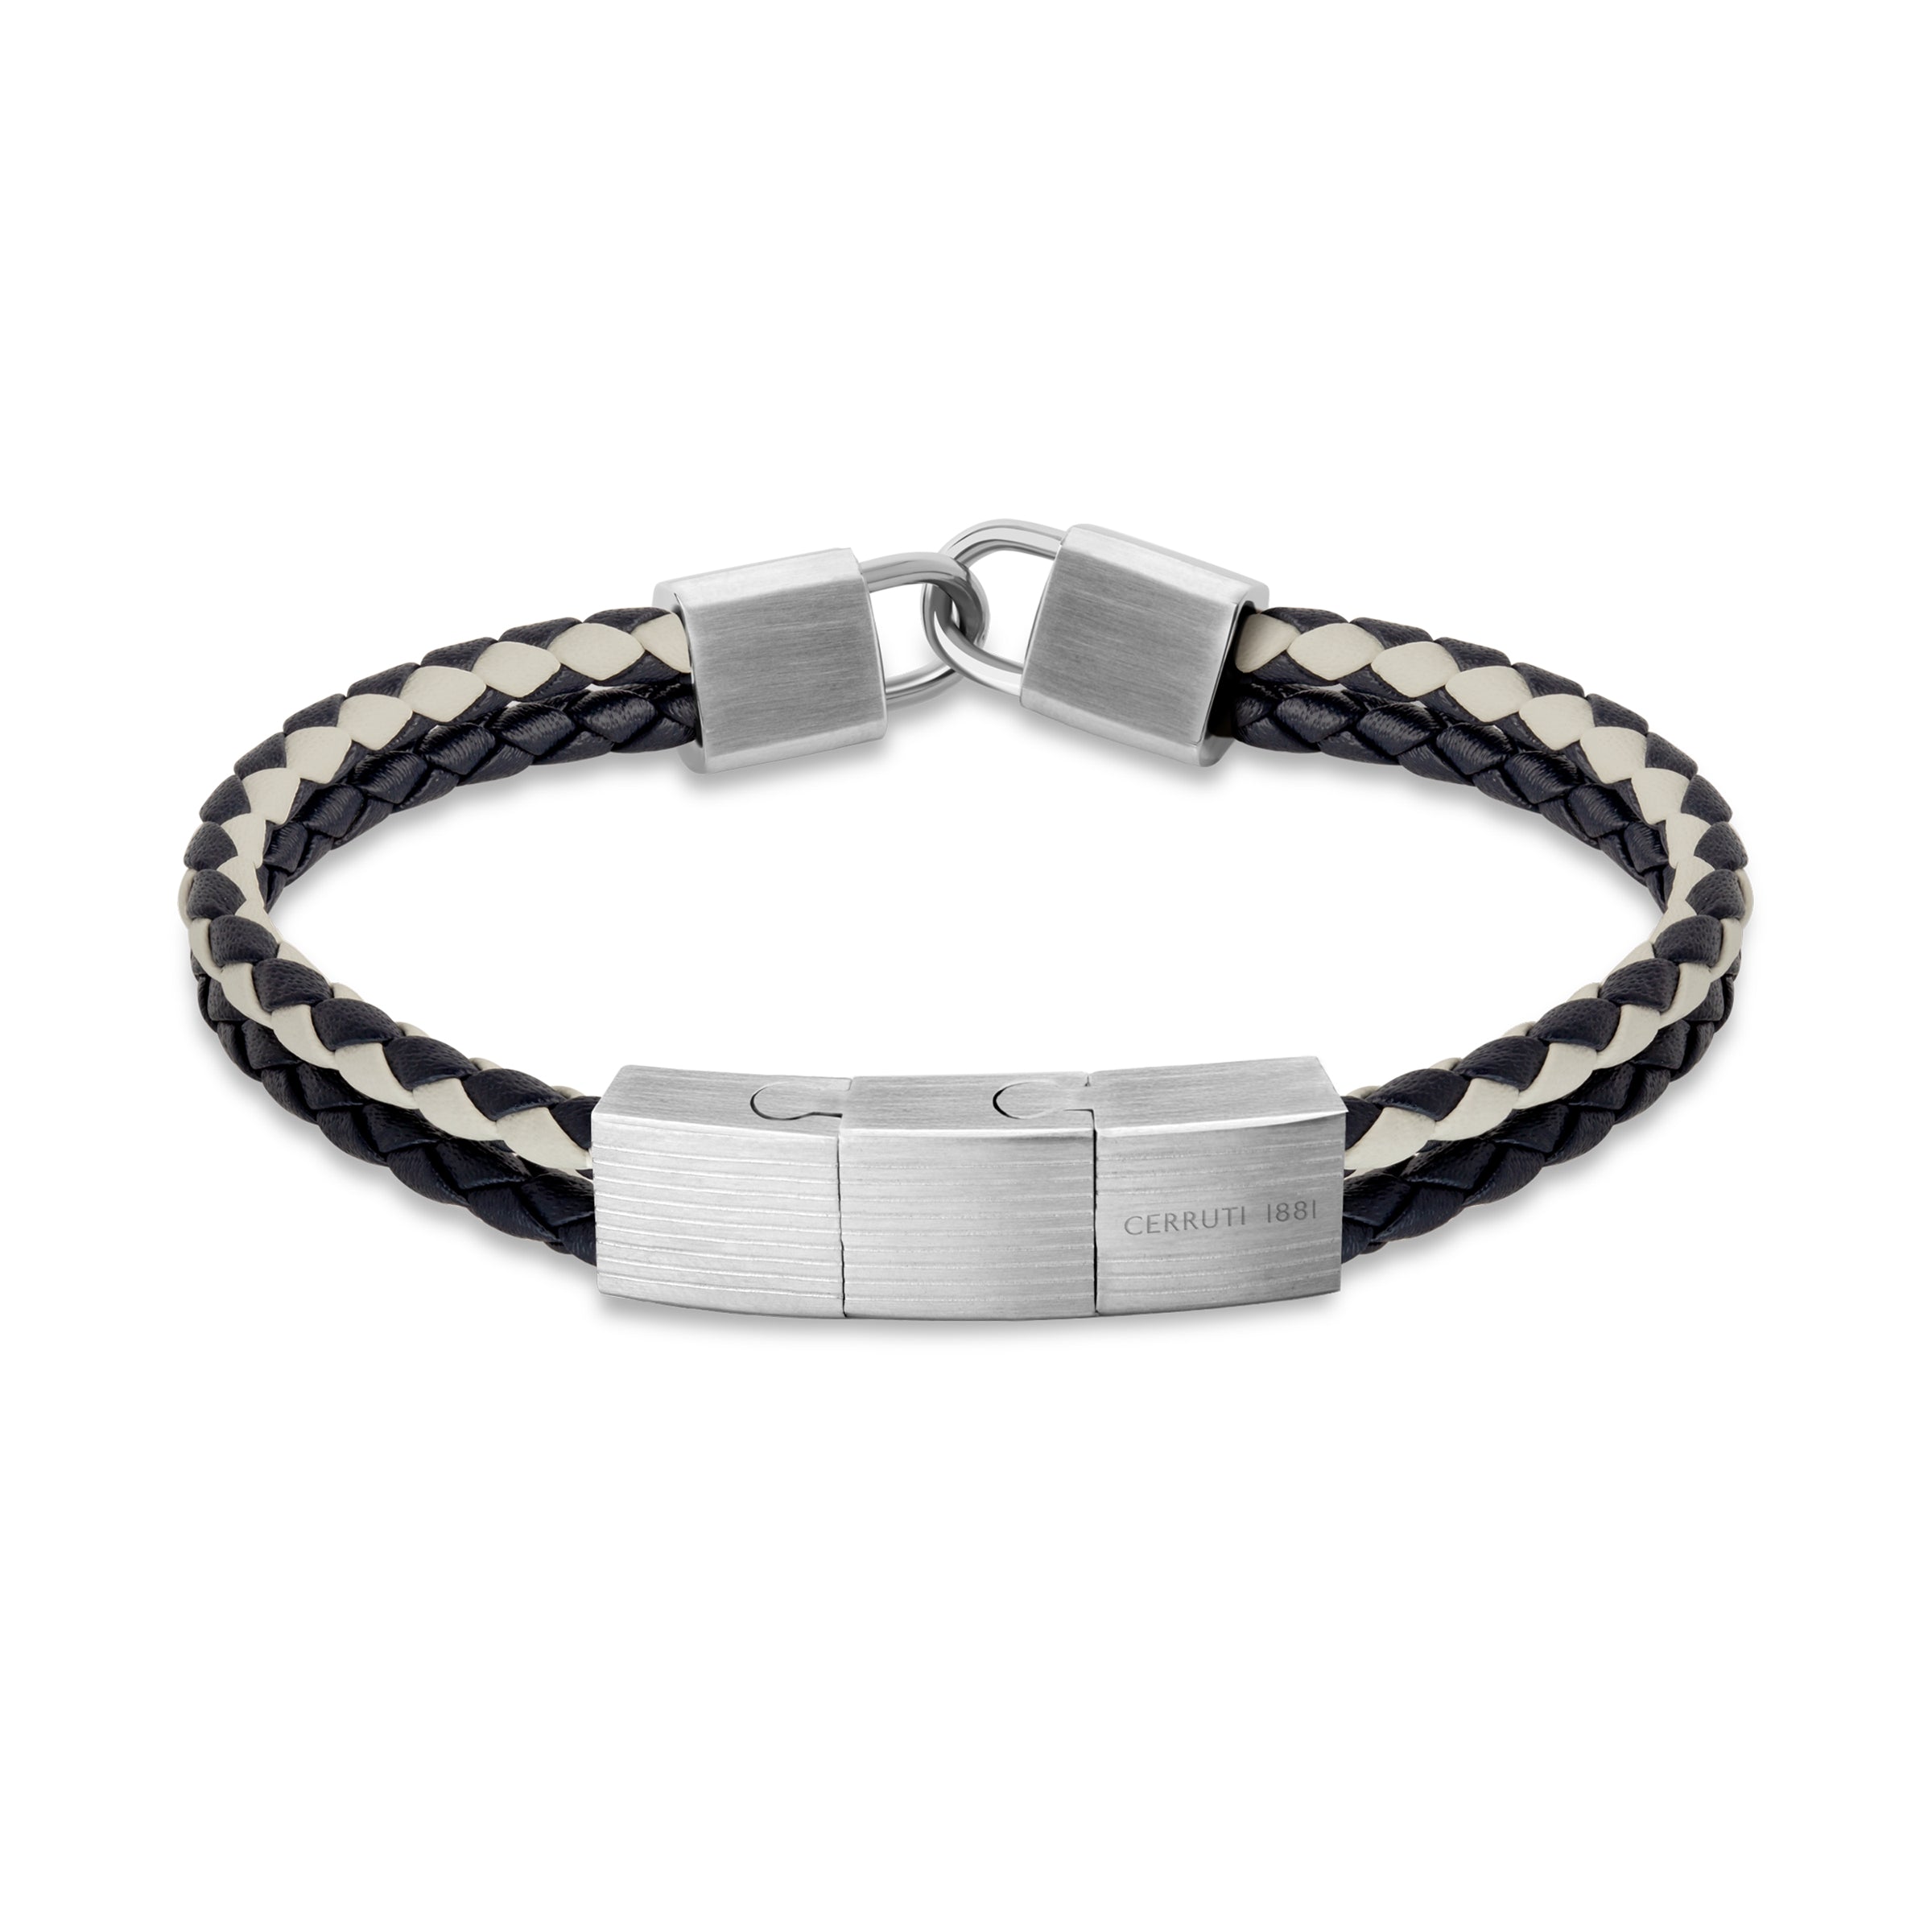 Cerruti Silver Bracelet for Men - CERBR-0021